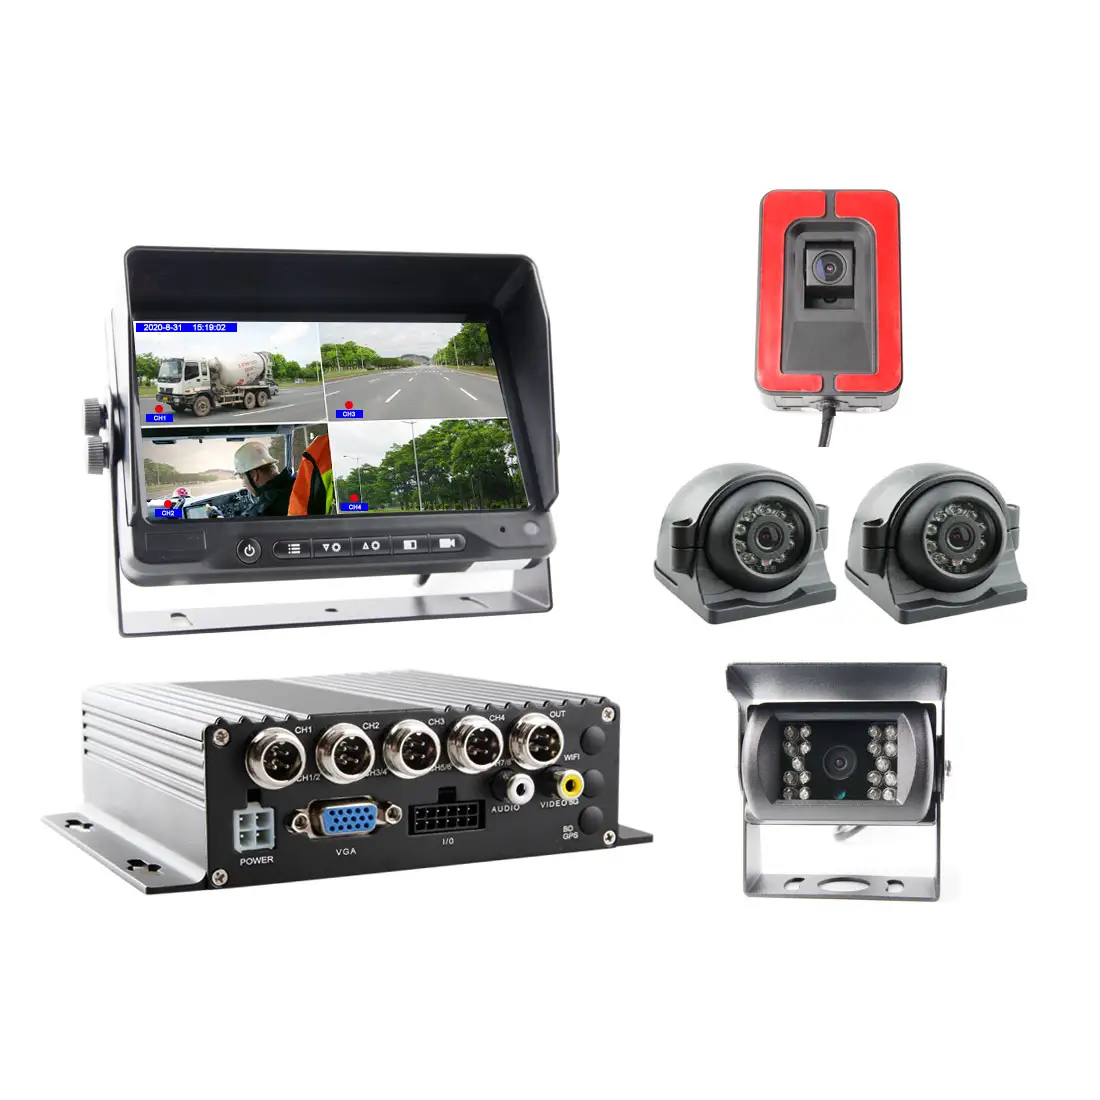 AHD 1080P كارت SD مزدوج 4 قنوات MDVR Kit مع GPS 3G 4G WIFI كاميرا CCTV للحافلة المتنقلة